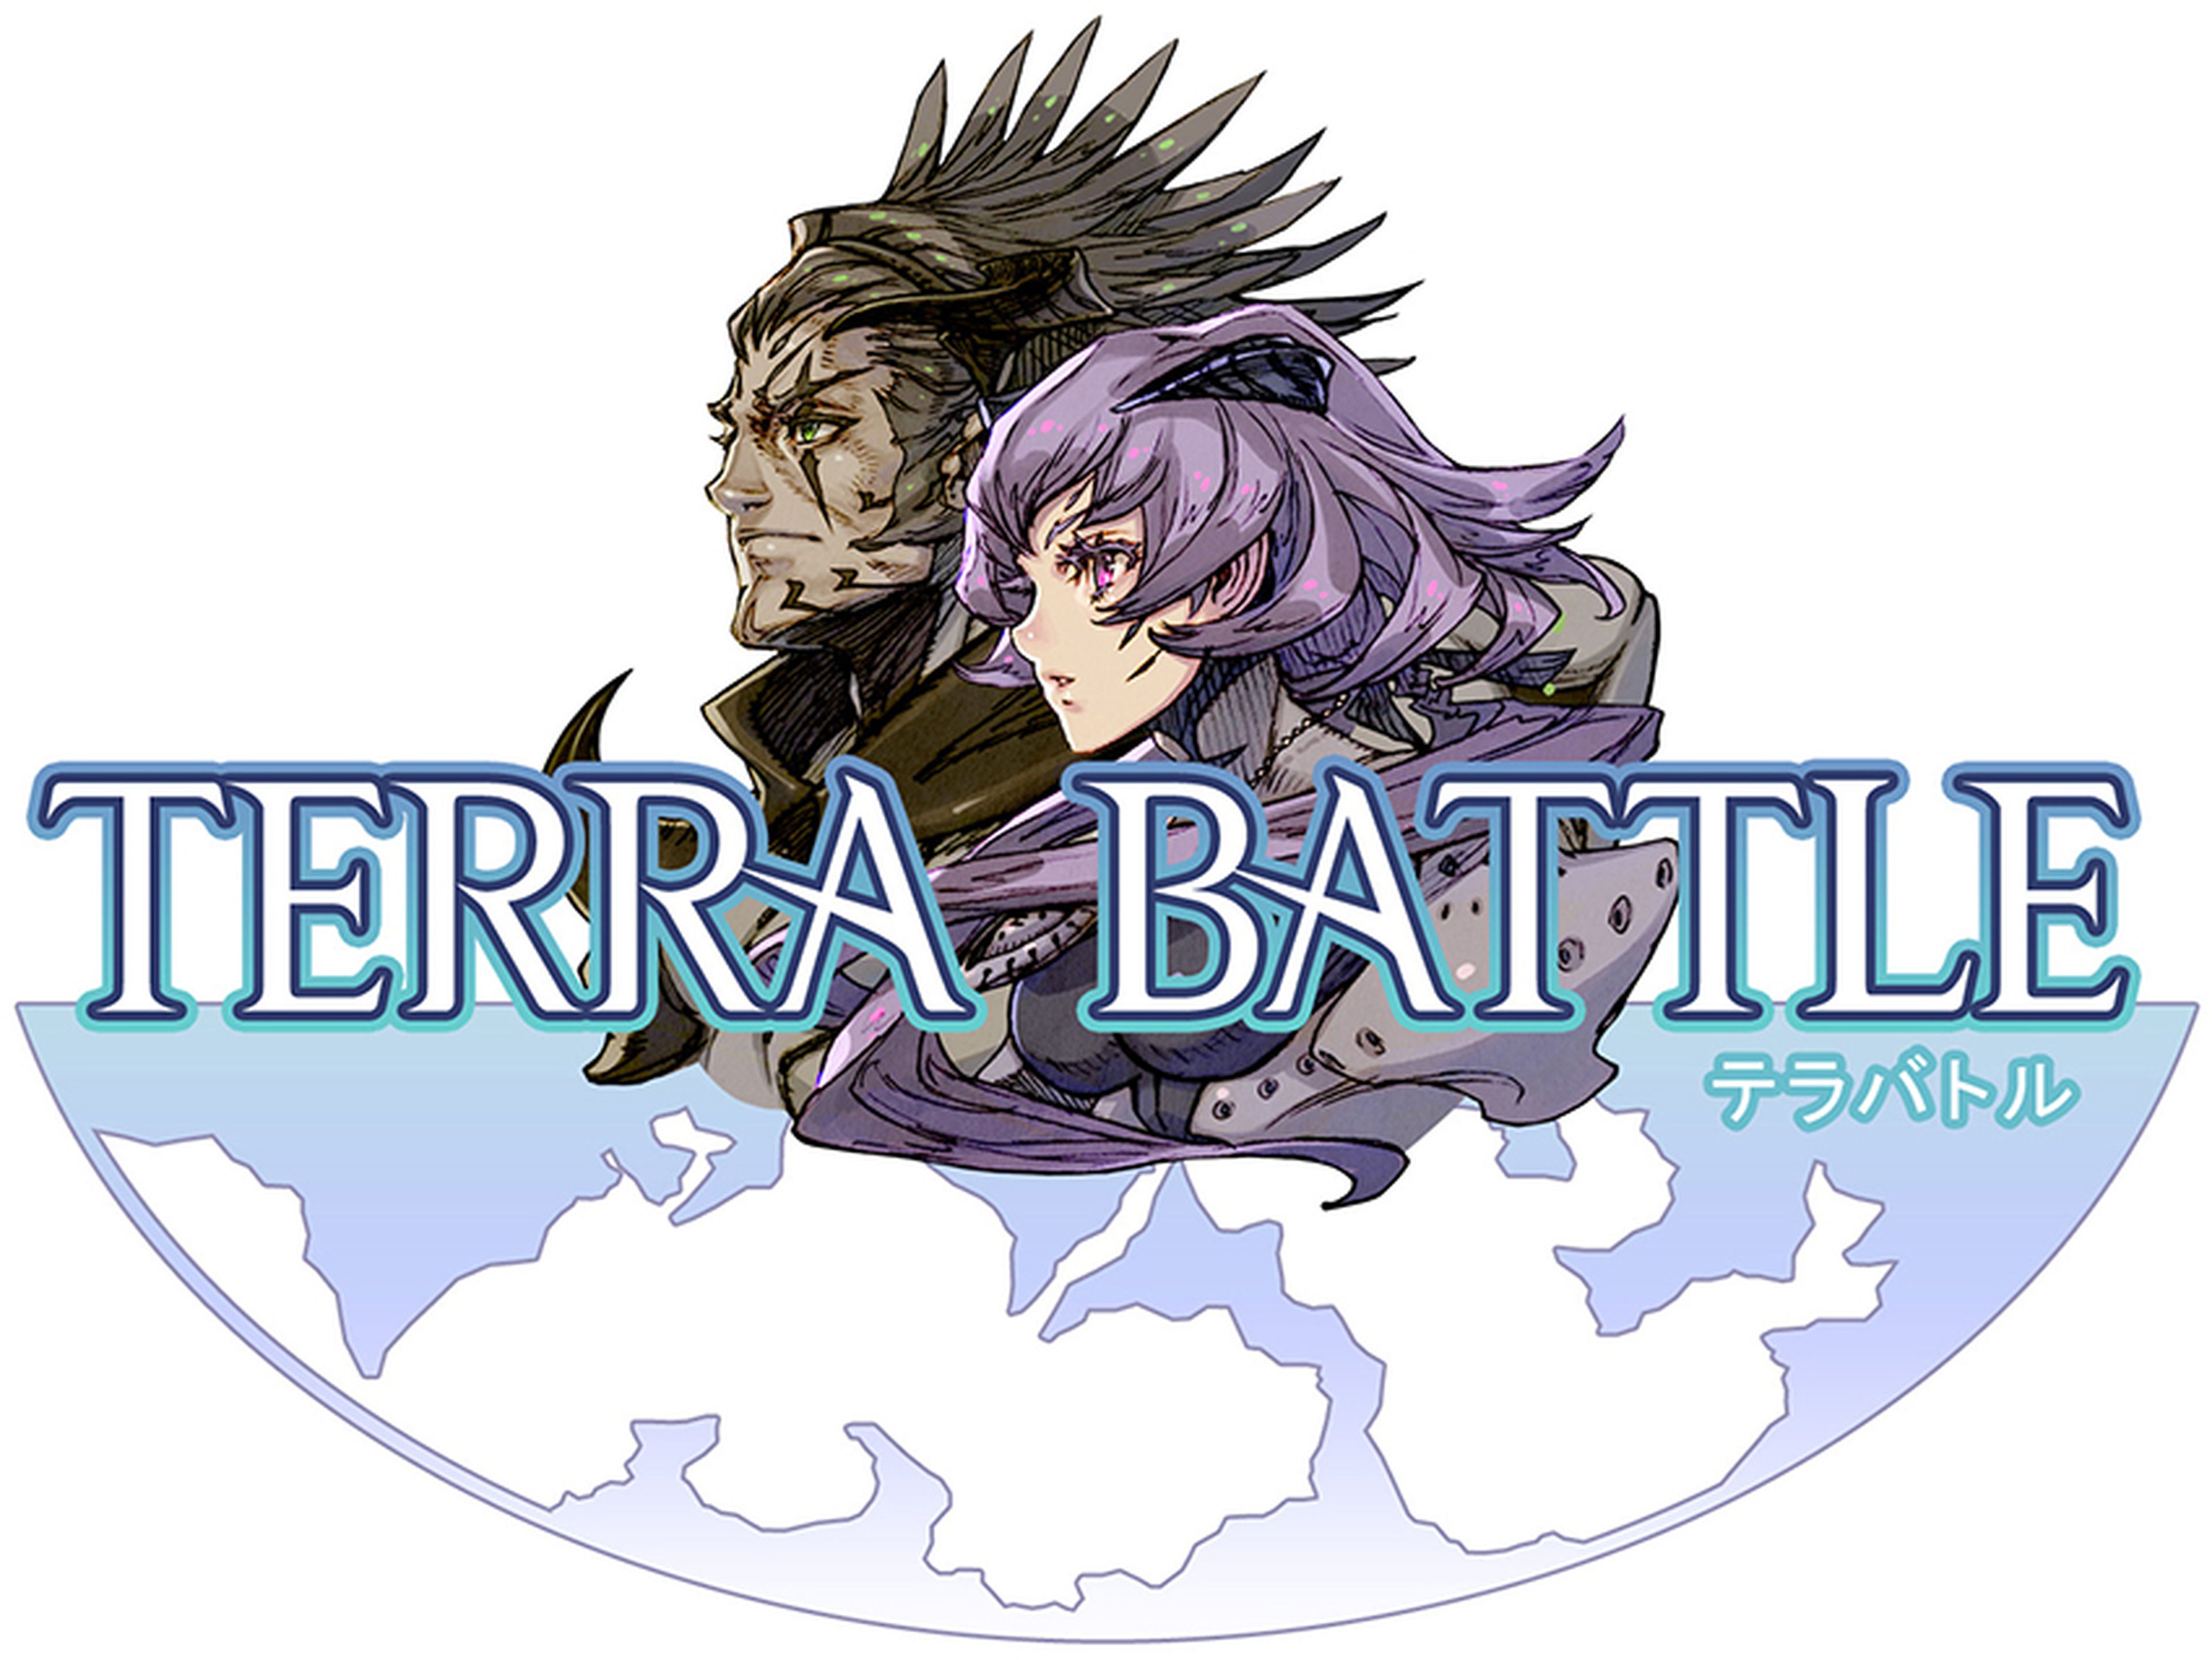 Terra Battle, lo nuevo de Mistwalker para Android e iOS